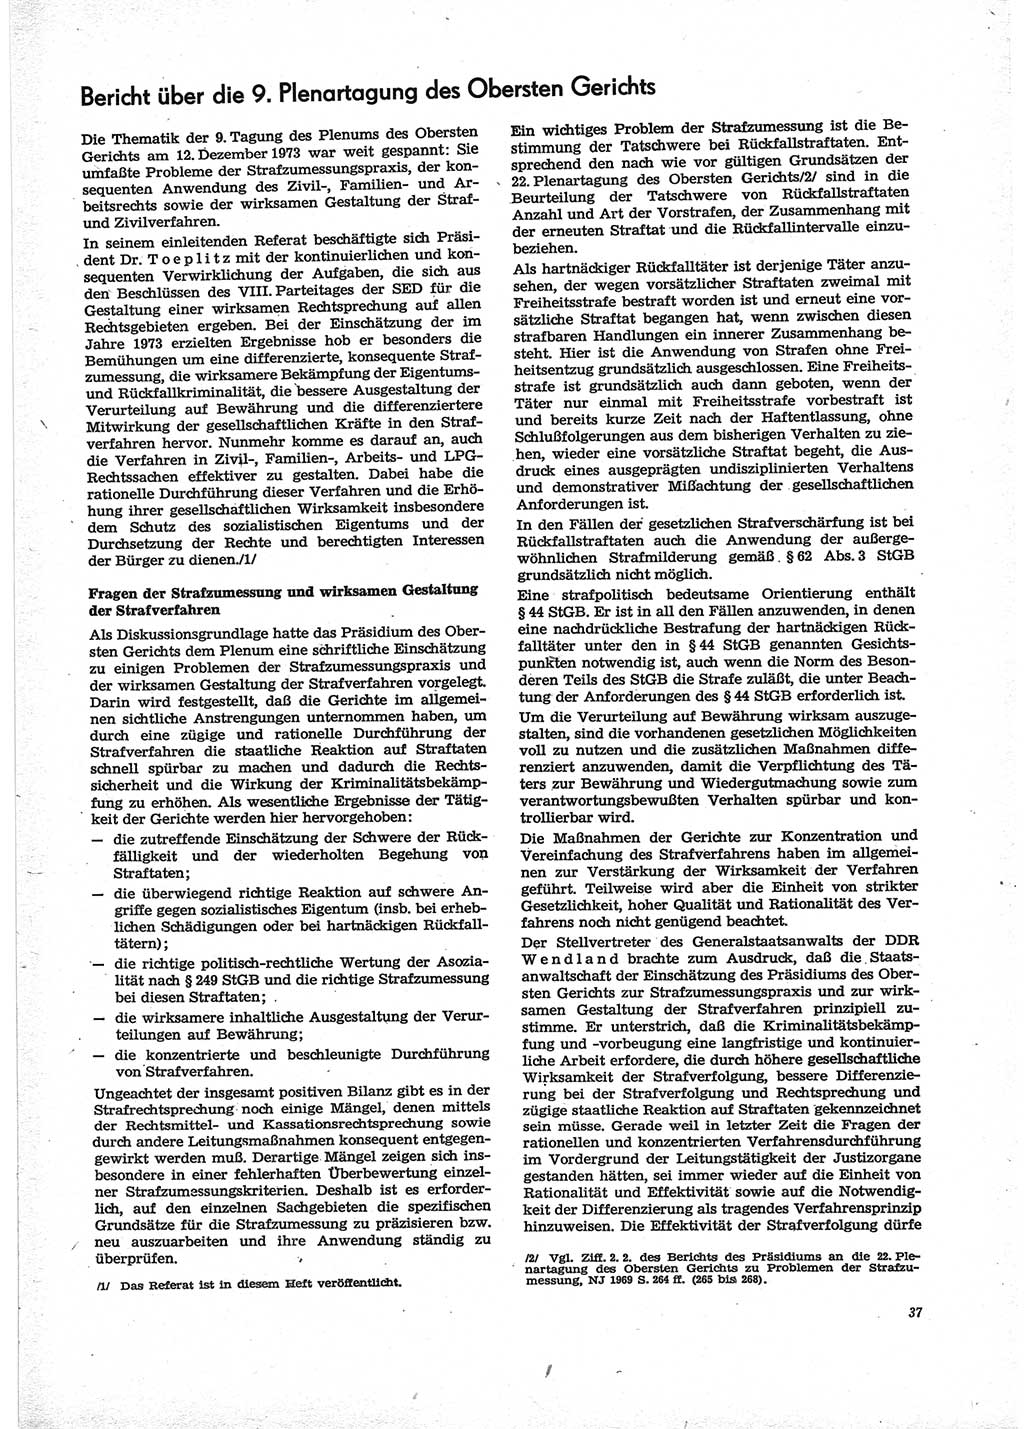 Neue Justiz (NJ), Zeitschrift für Recht und Rechtswissenschaft [Deutsche Demokratische Republik (DDR)], 28. Jahrgang 1974, Seite 37 (NJ DDR 1974, S. 37)